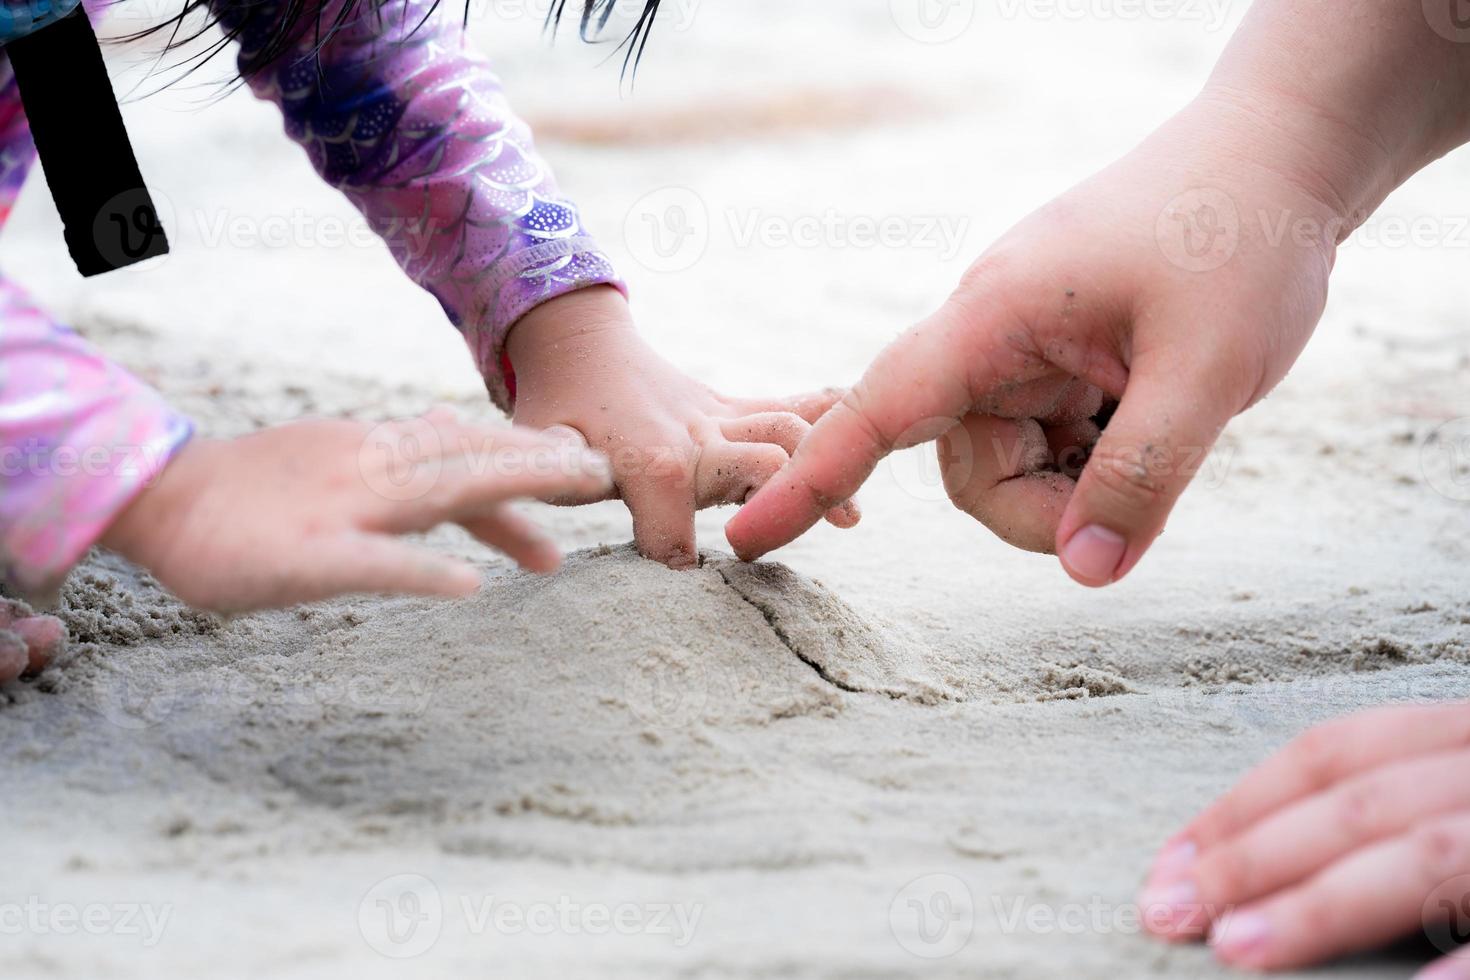 cerrar la mano de la niña estaba perforando un pequeño montón de arena que había hecho. la mano del padre está hurgando en la arena y jugando con su hija. espacio vacío para ingresar texto. foto